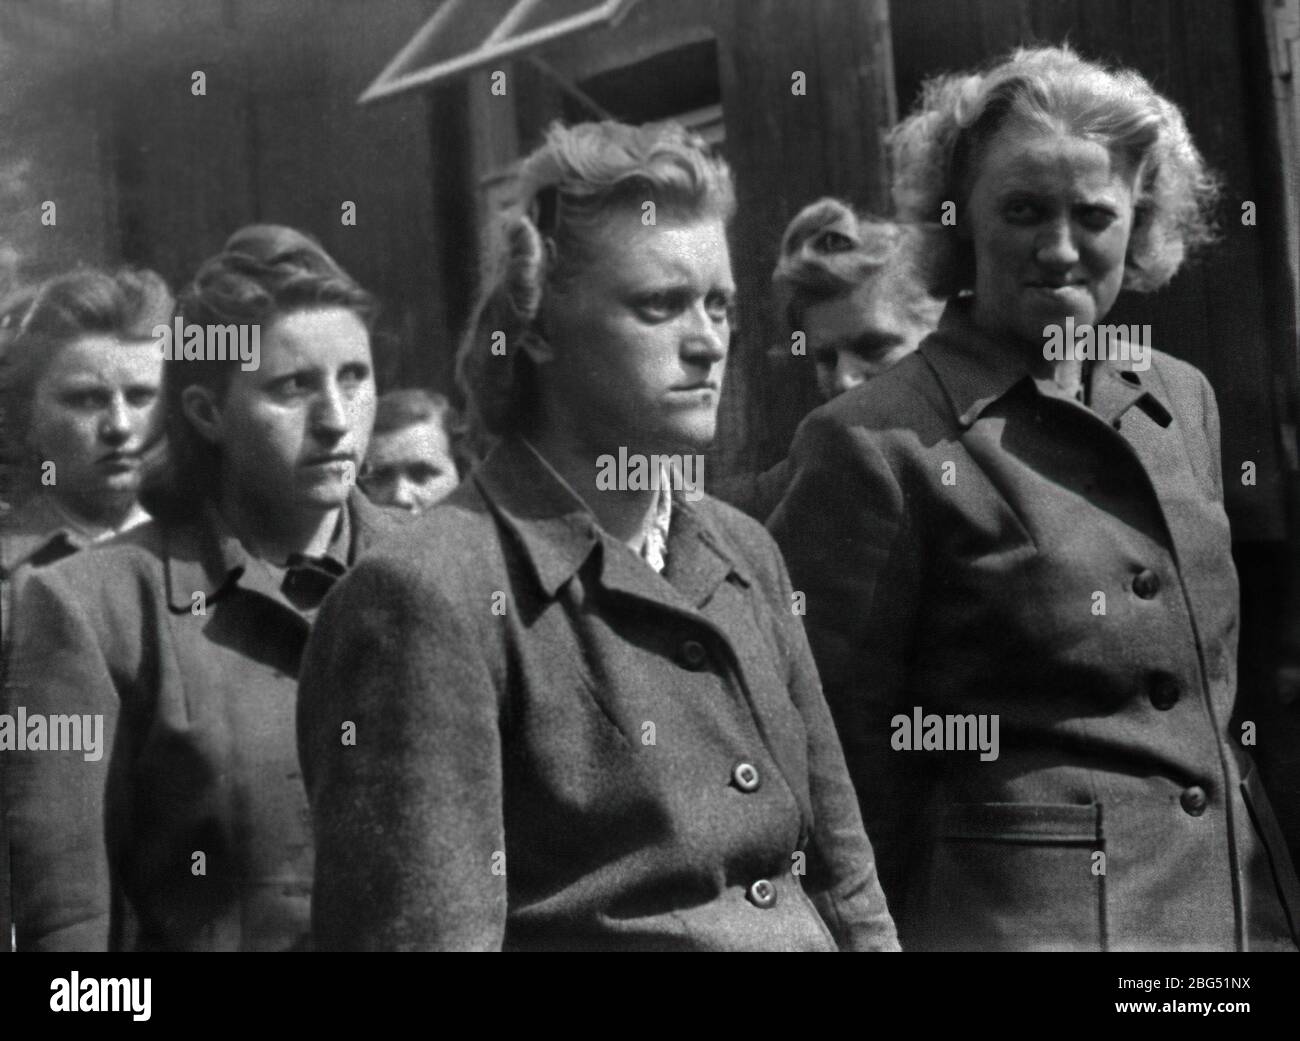 Dokumentation zum Zweiten Weltkrieg. Wärterinnen des Konzentrationslagers Bergen-Belsen kurz nach ihrer Gefangennahme durch britische Soldaten im April 1945. Stockfoto